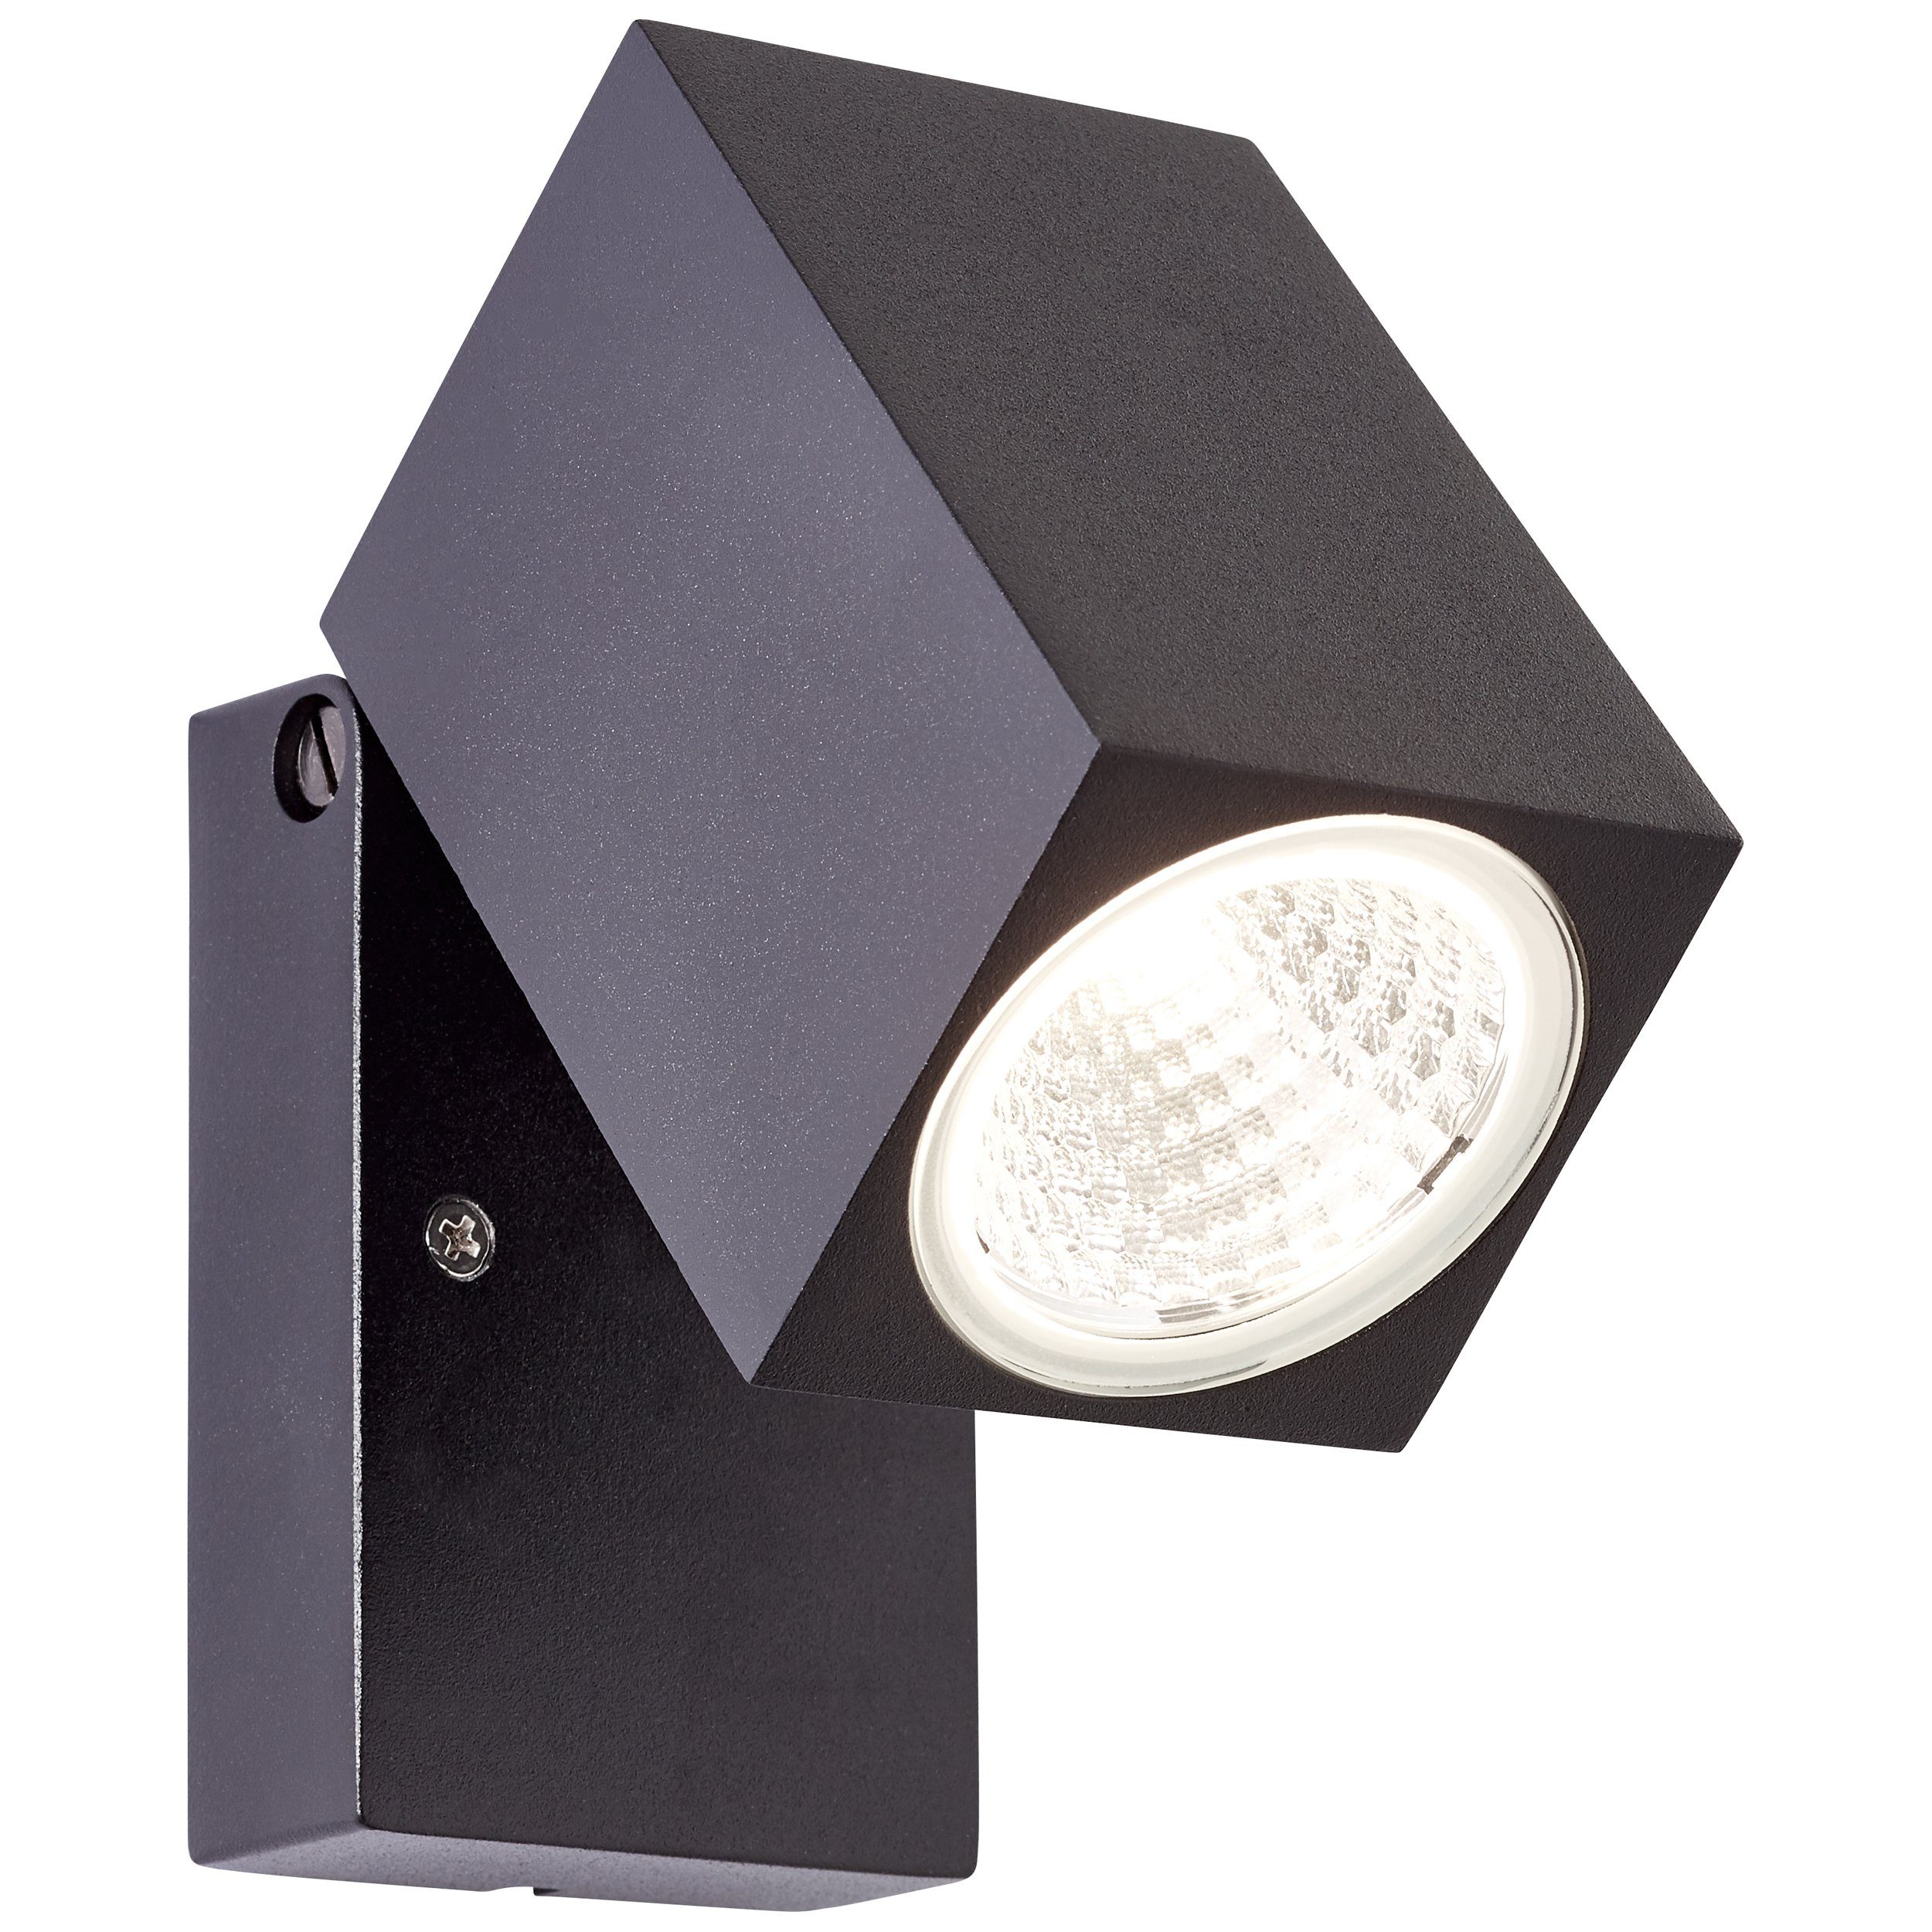 Brilliant LED Außen-Wandleuchte Burk, LED und langlebig integriert, LED schwarz 6W durch Energiesparend 1x Außenwandstrahler integri, Burk LED -Einsatz LED